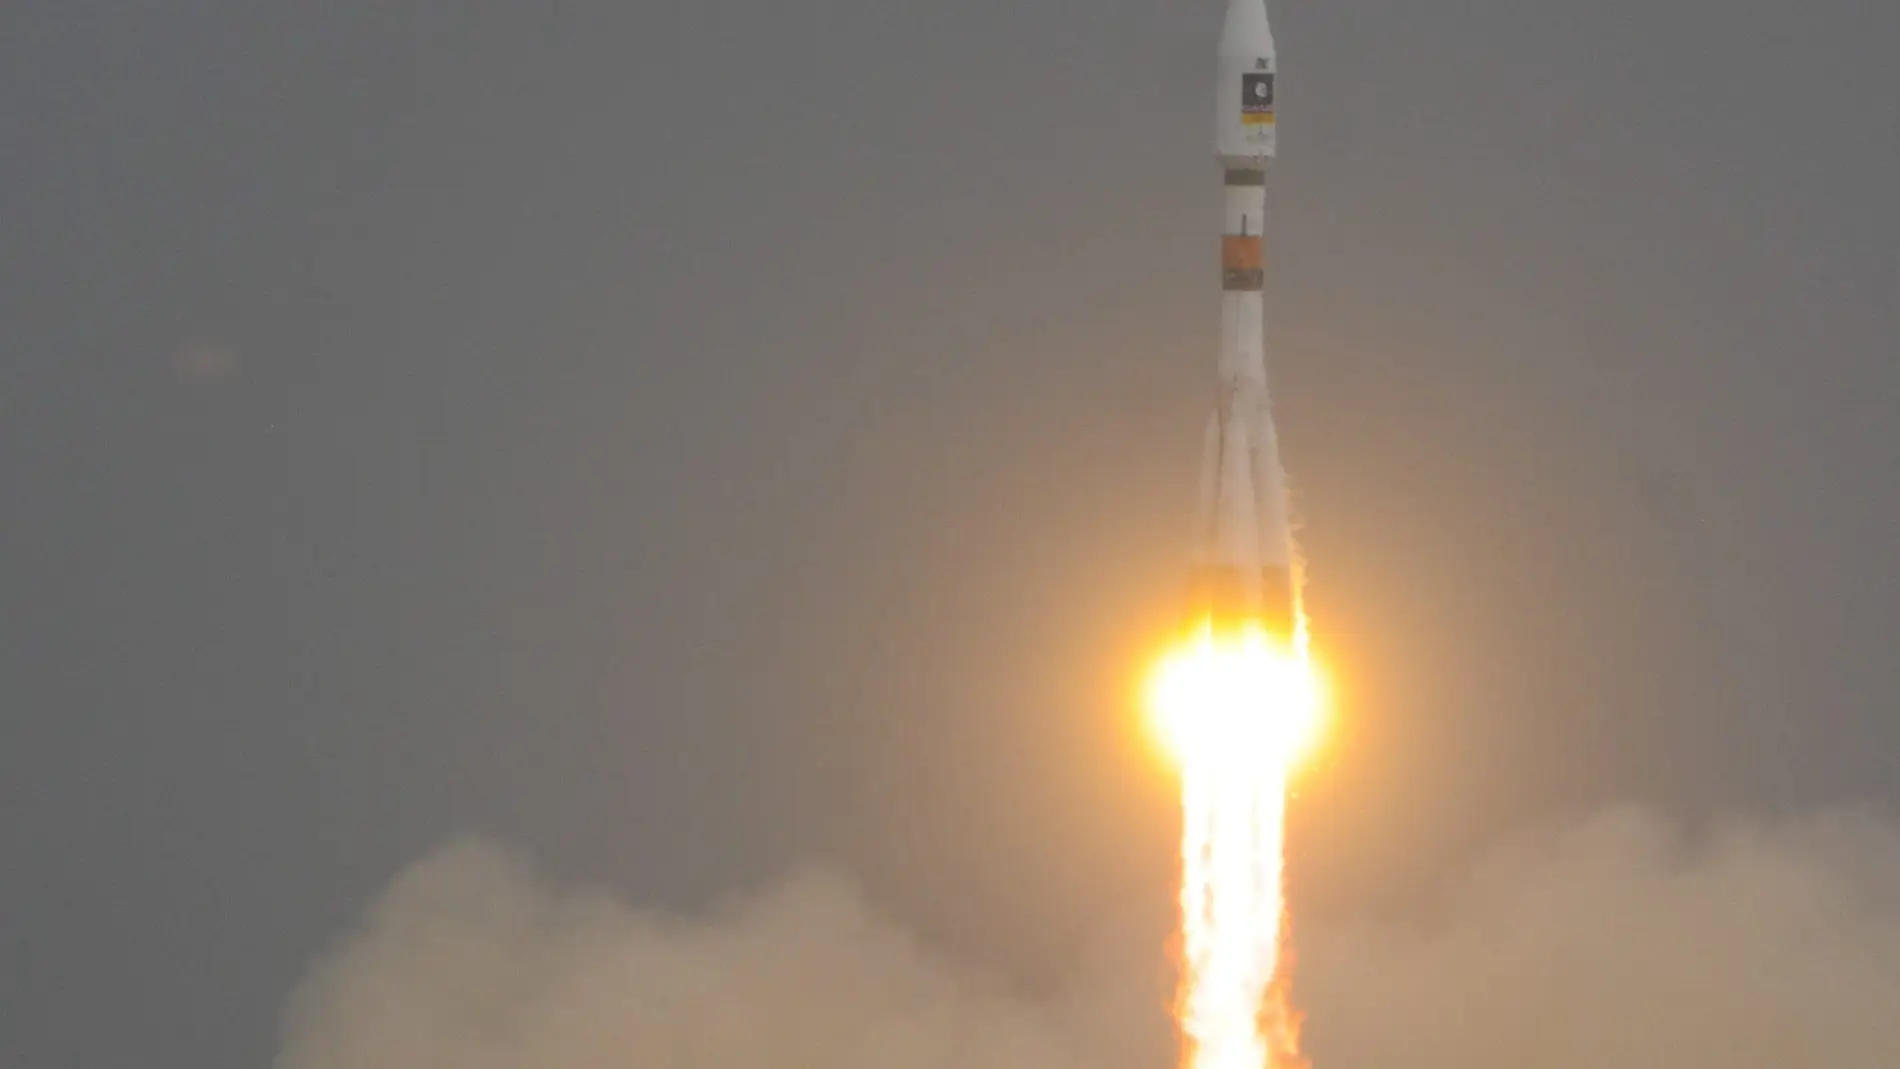 Fotografía facilitada por la Agencia Espacial Europea (ESA) del despegue del cohete Soyuz 